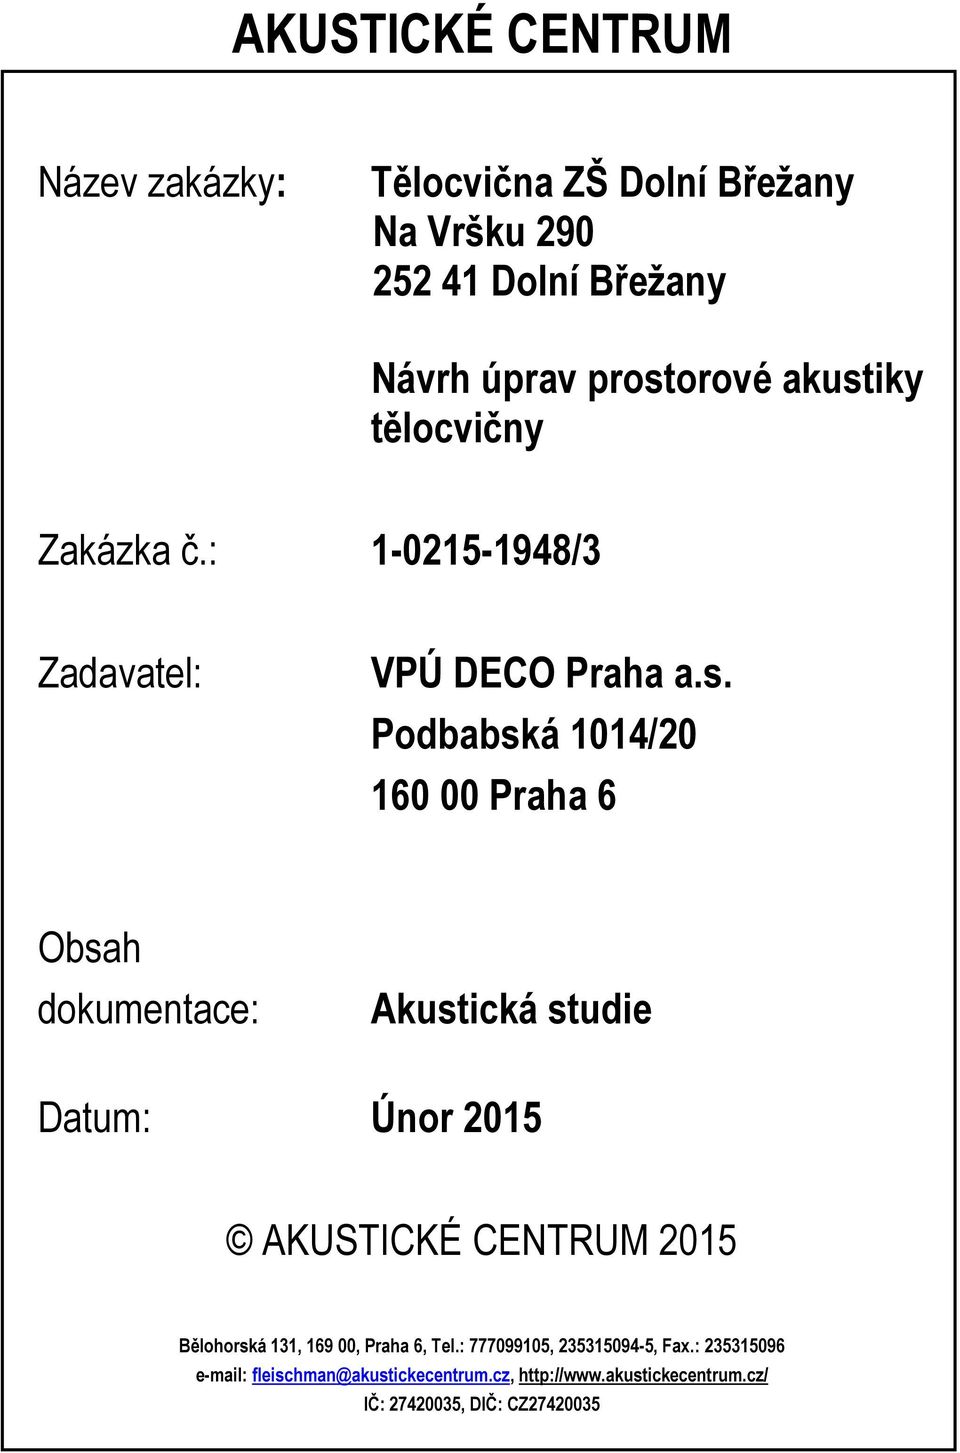 Podbabská 1014/20 160 00 Praha 6 Obsah dokumentace: Akustická studie Datum: Únor 2015 AKUSTICKÉ CENTRUM 2015